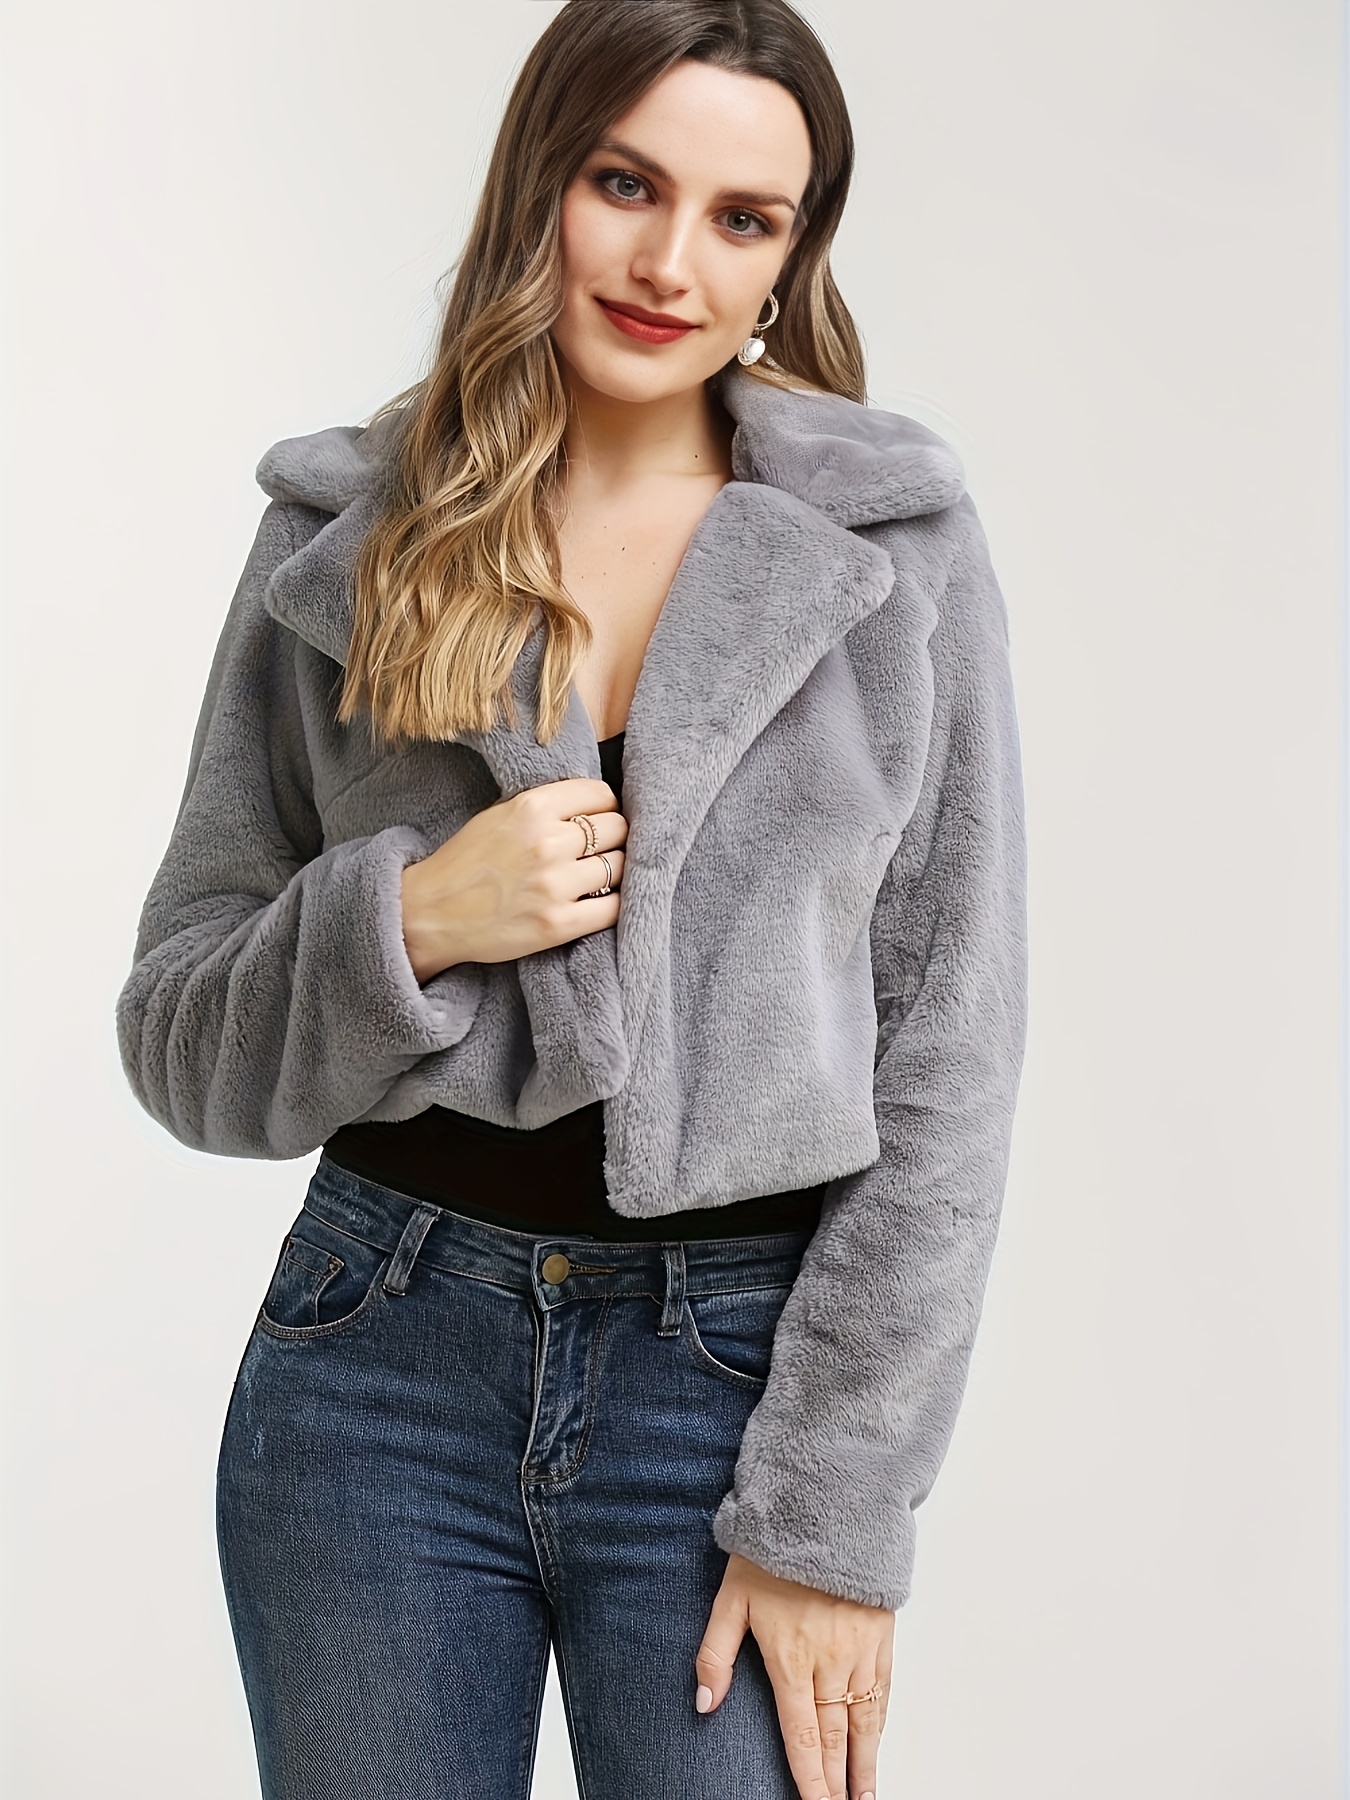 White Faux Fur Coat Women Winter Cropped Bubble Coats Lapel Collar Jackets  Fuzzy Fluffy Warm Outerwear